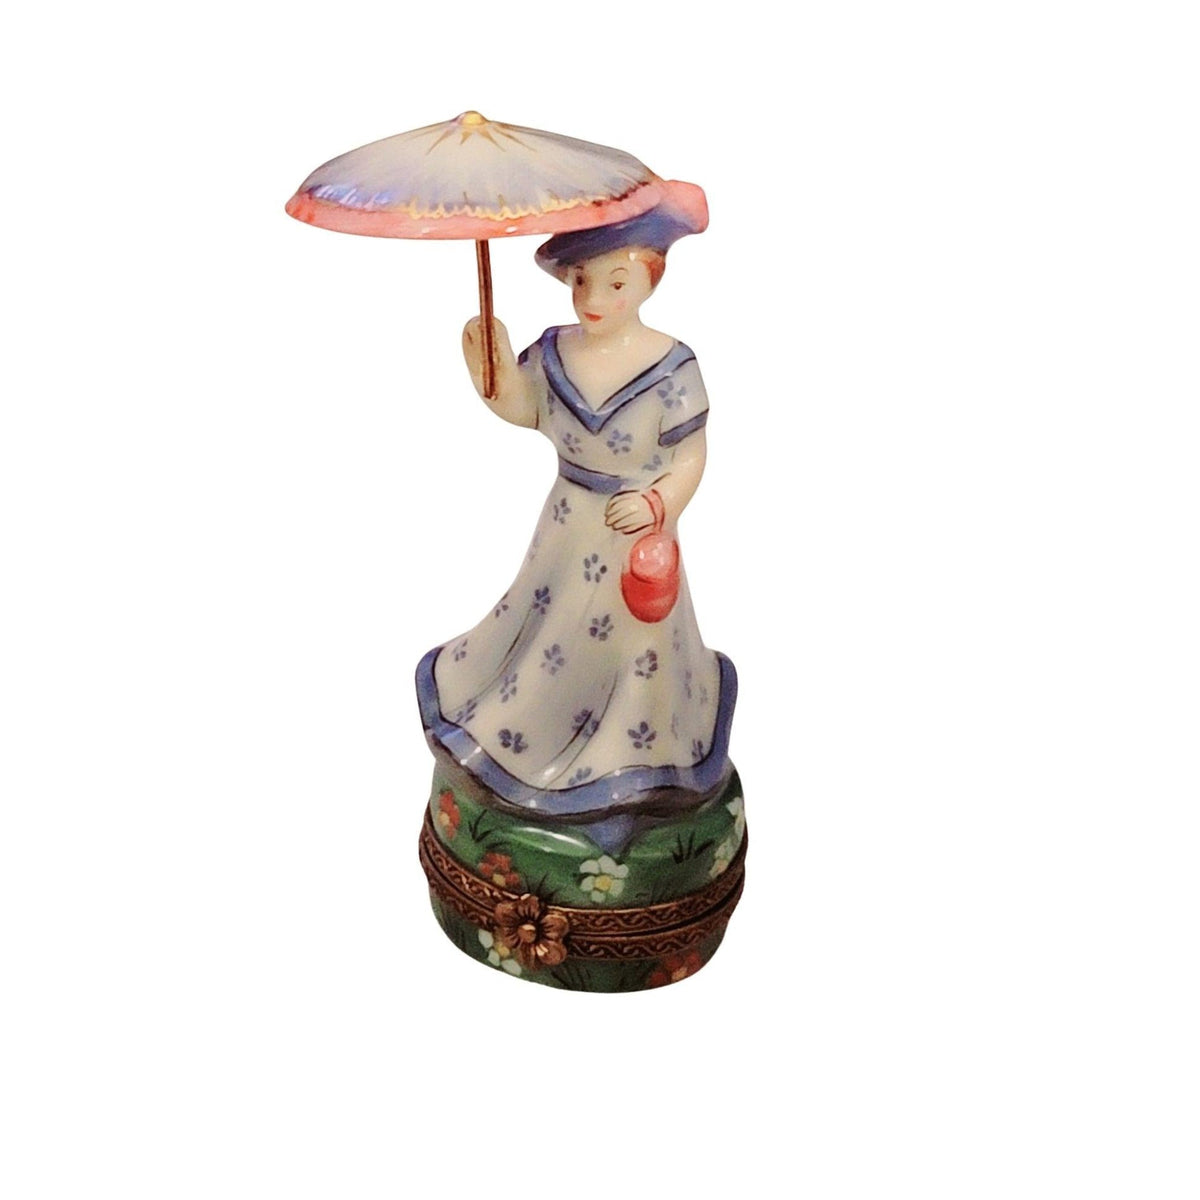 Woman Umbrella Parasol Blue Monet No. 1 of 500 Limoges Box Figurine - Limoges Box Boutique